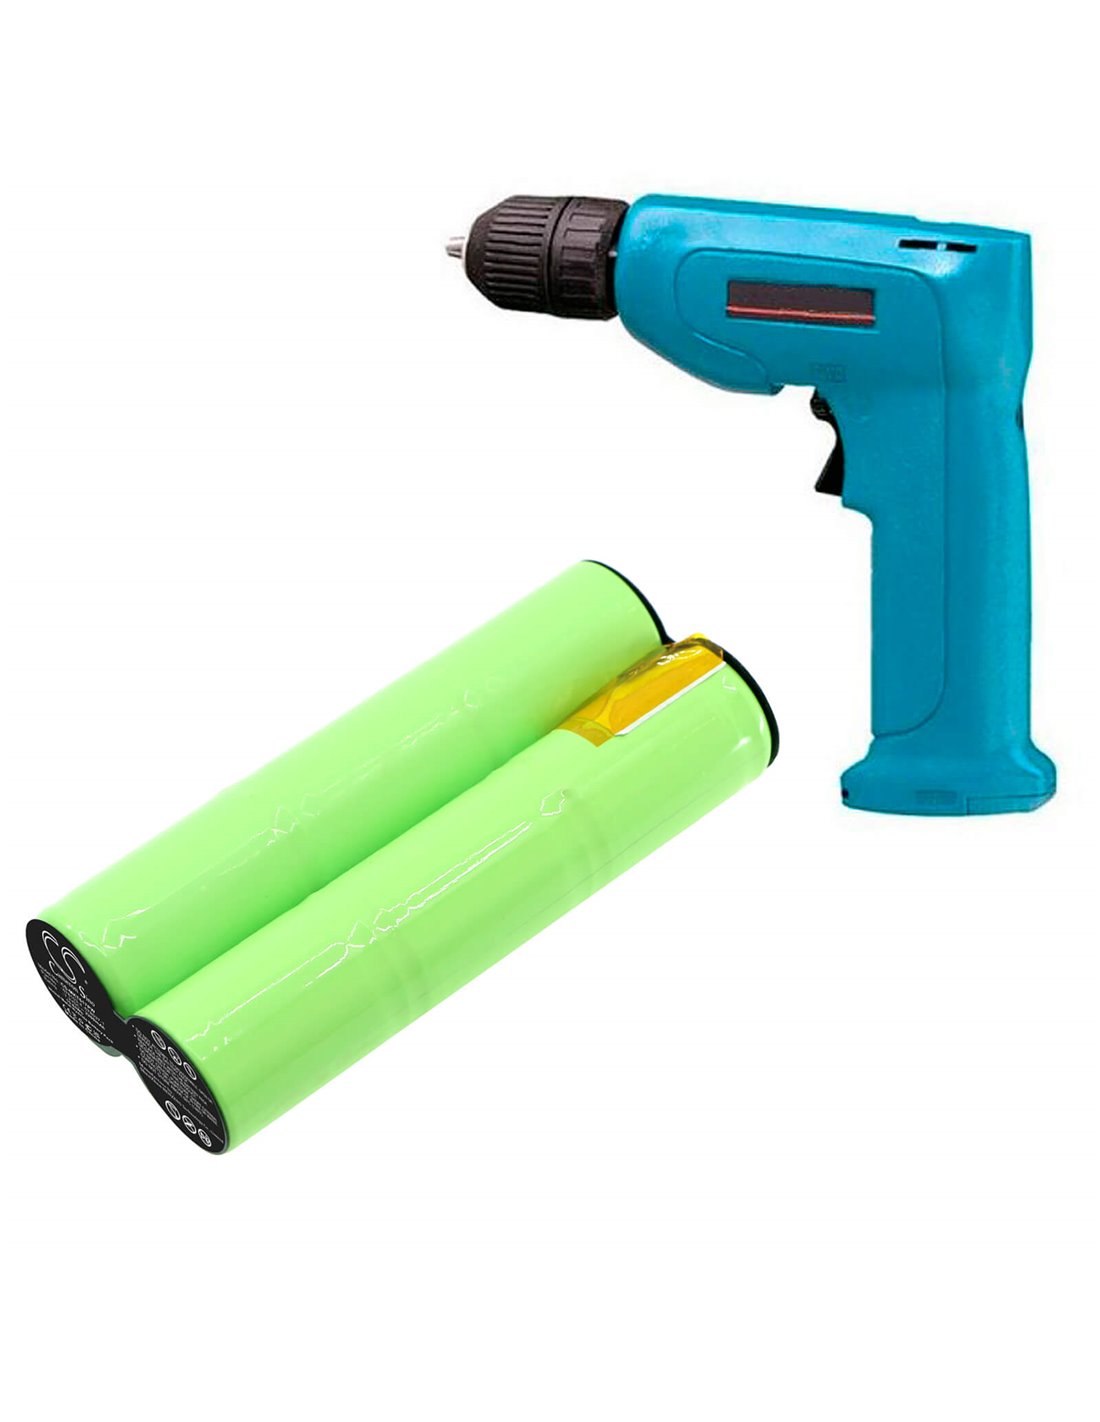 3.6V Cordless DIY Hot Melt Glue Guns 1800mAh Li-ion Glue G un Hand Craft  Power Tool With Glue Sticks For Car Home Outdoor - Price history & Review